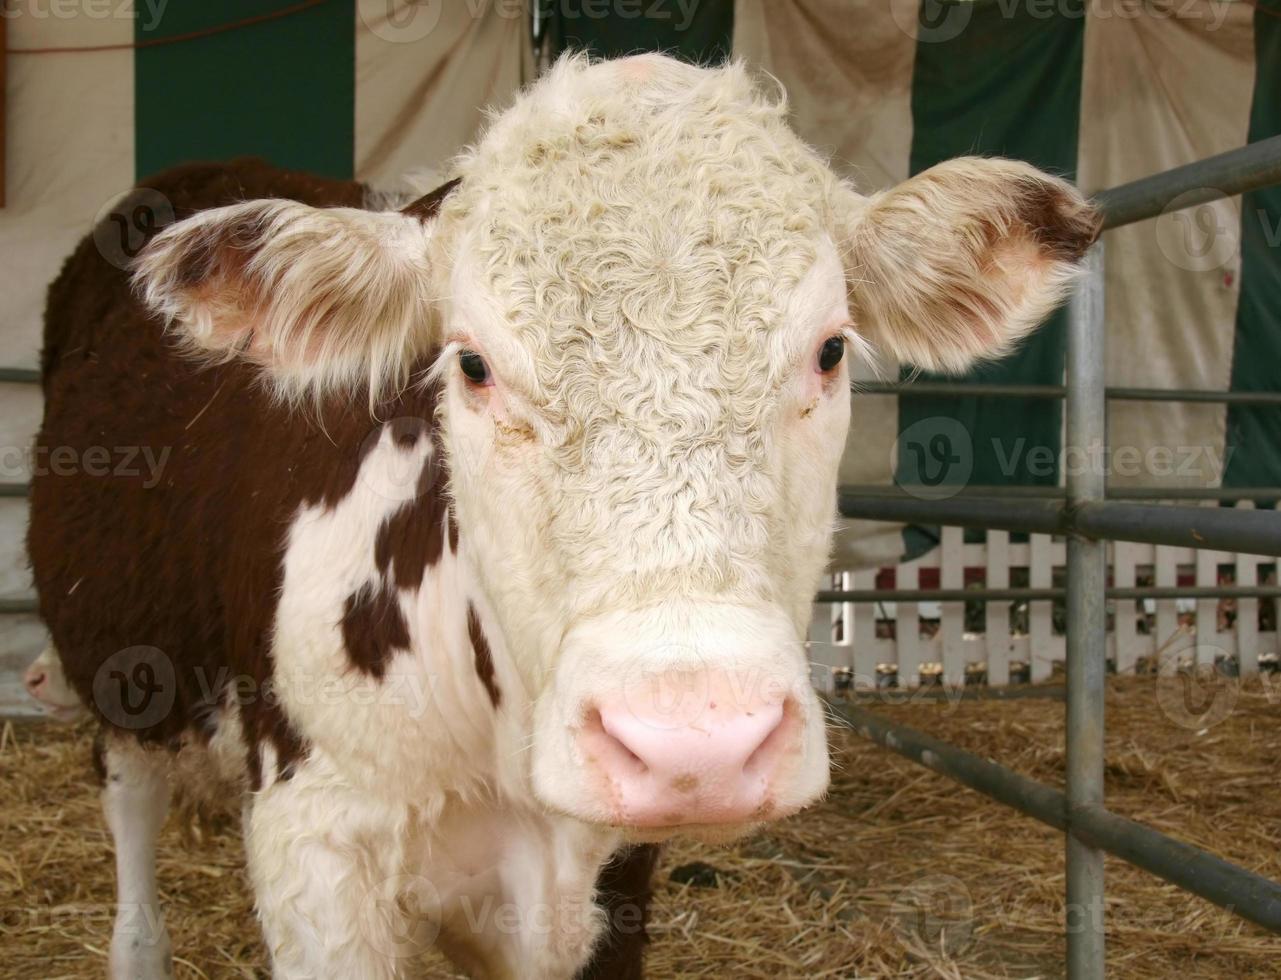 Adorable Cow photo